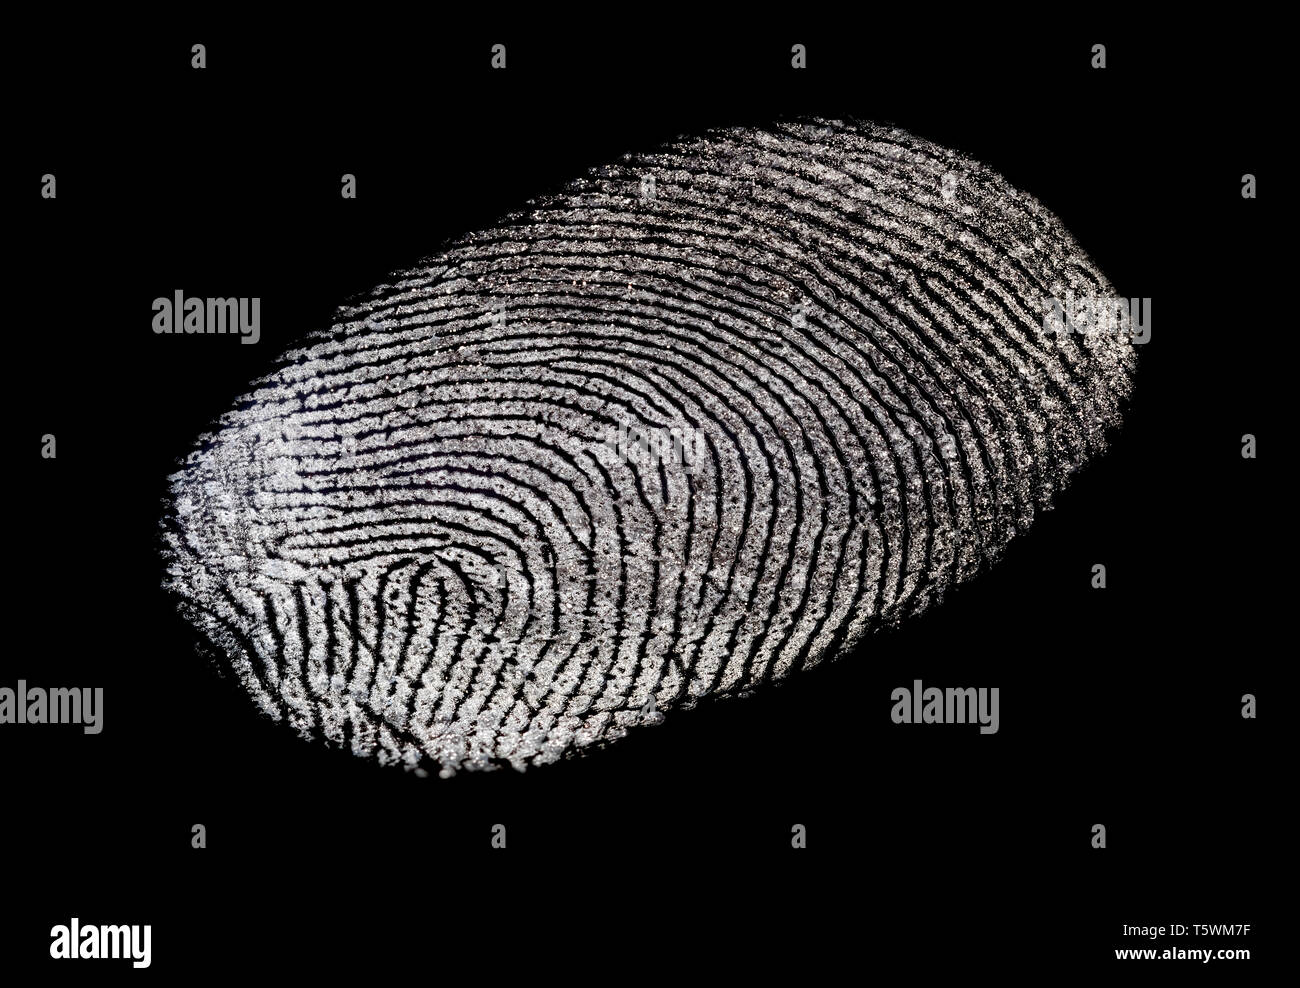 Makro Nahaufnahme von einem einzigen fettige Fingerabdrücke auf einem schwarzen Hintergrund. Fingerprint Ausschnitt. Stockfoto